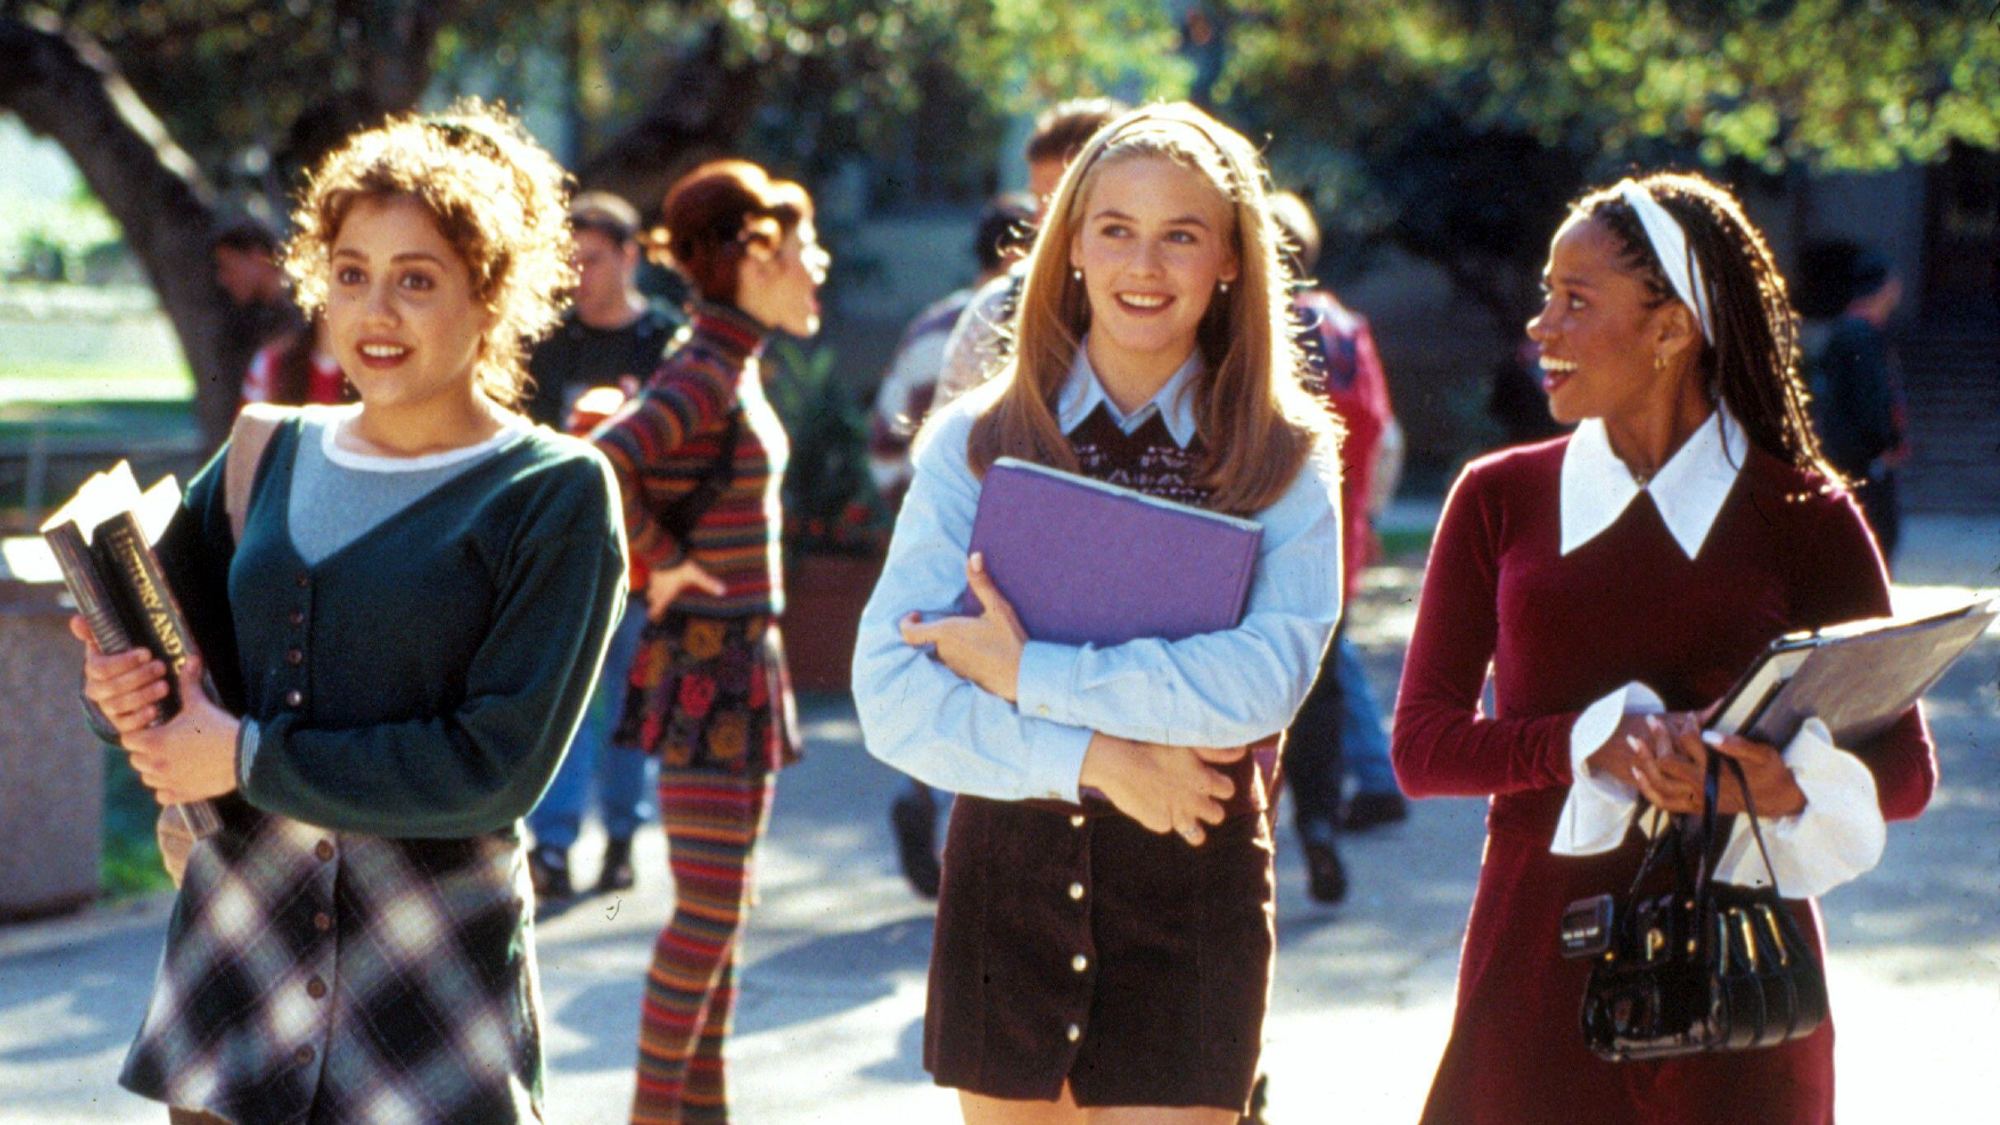 (Von links nach rechts) Brittany Murphy als Tai Frasier, Alicia Silverstone als Cher Horowitz und Stacey Dash als Dionne Davenport in Clueless